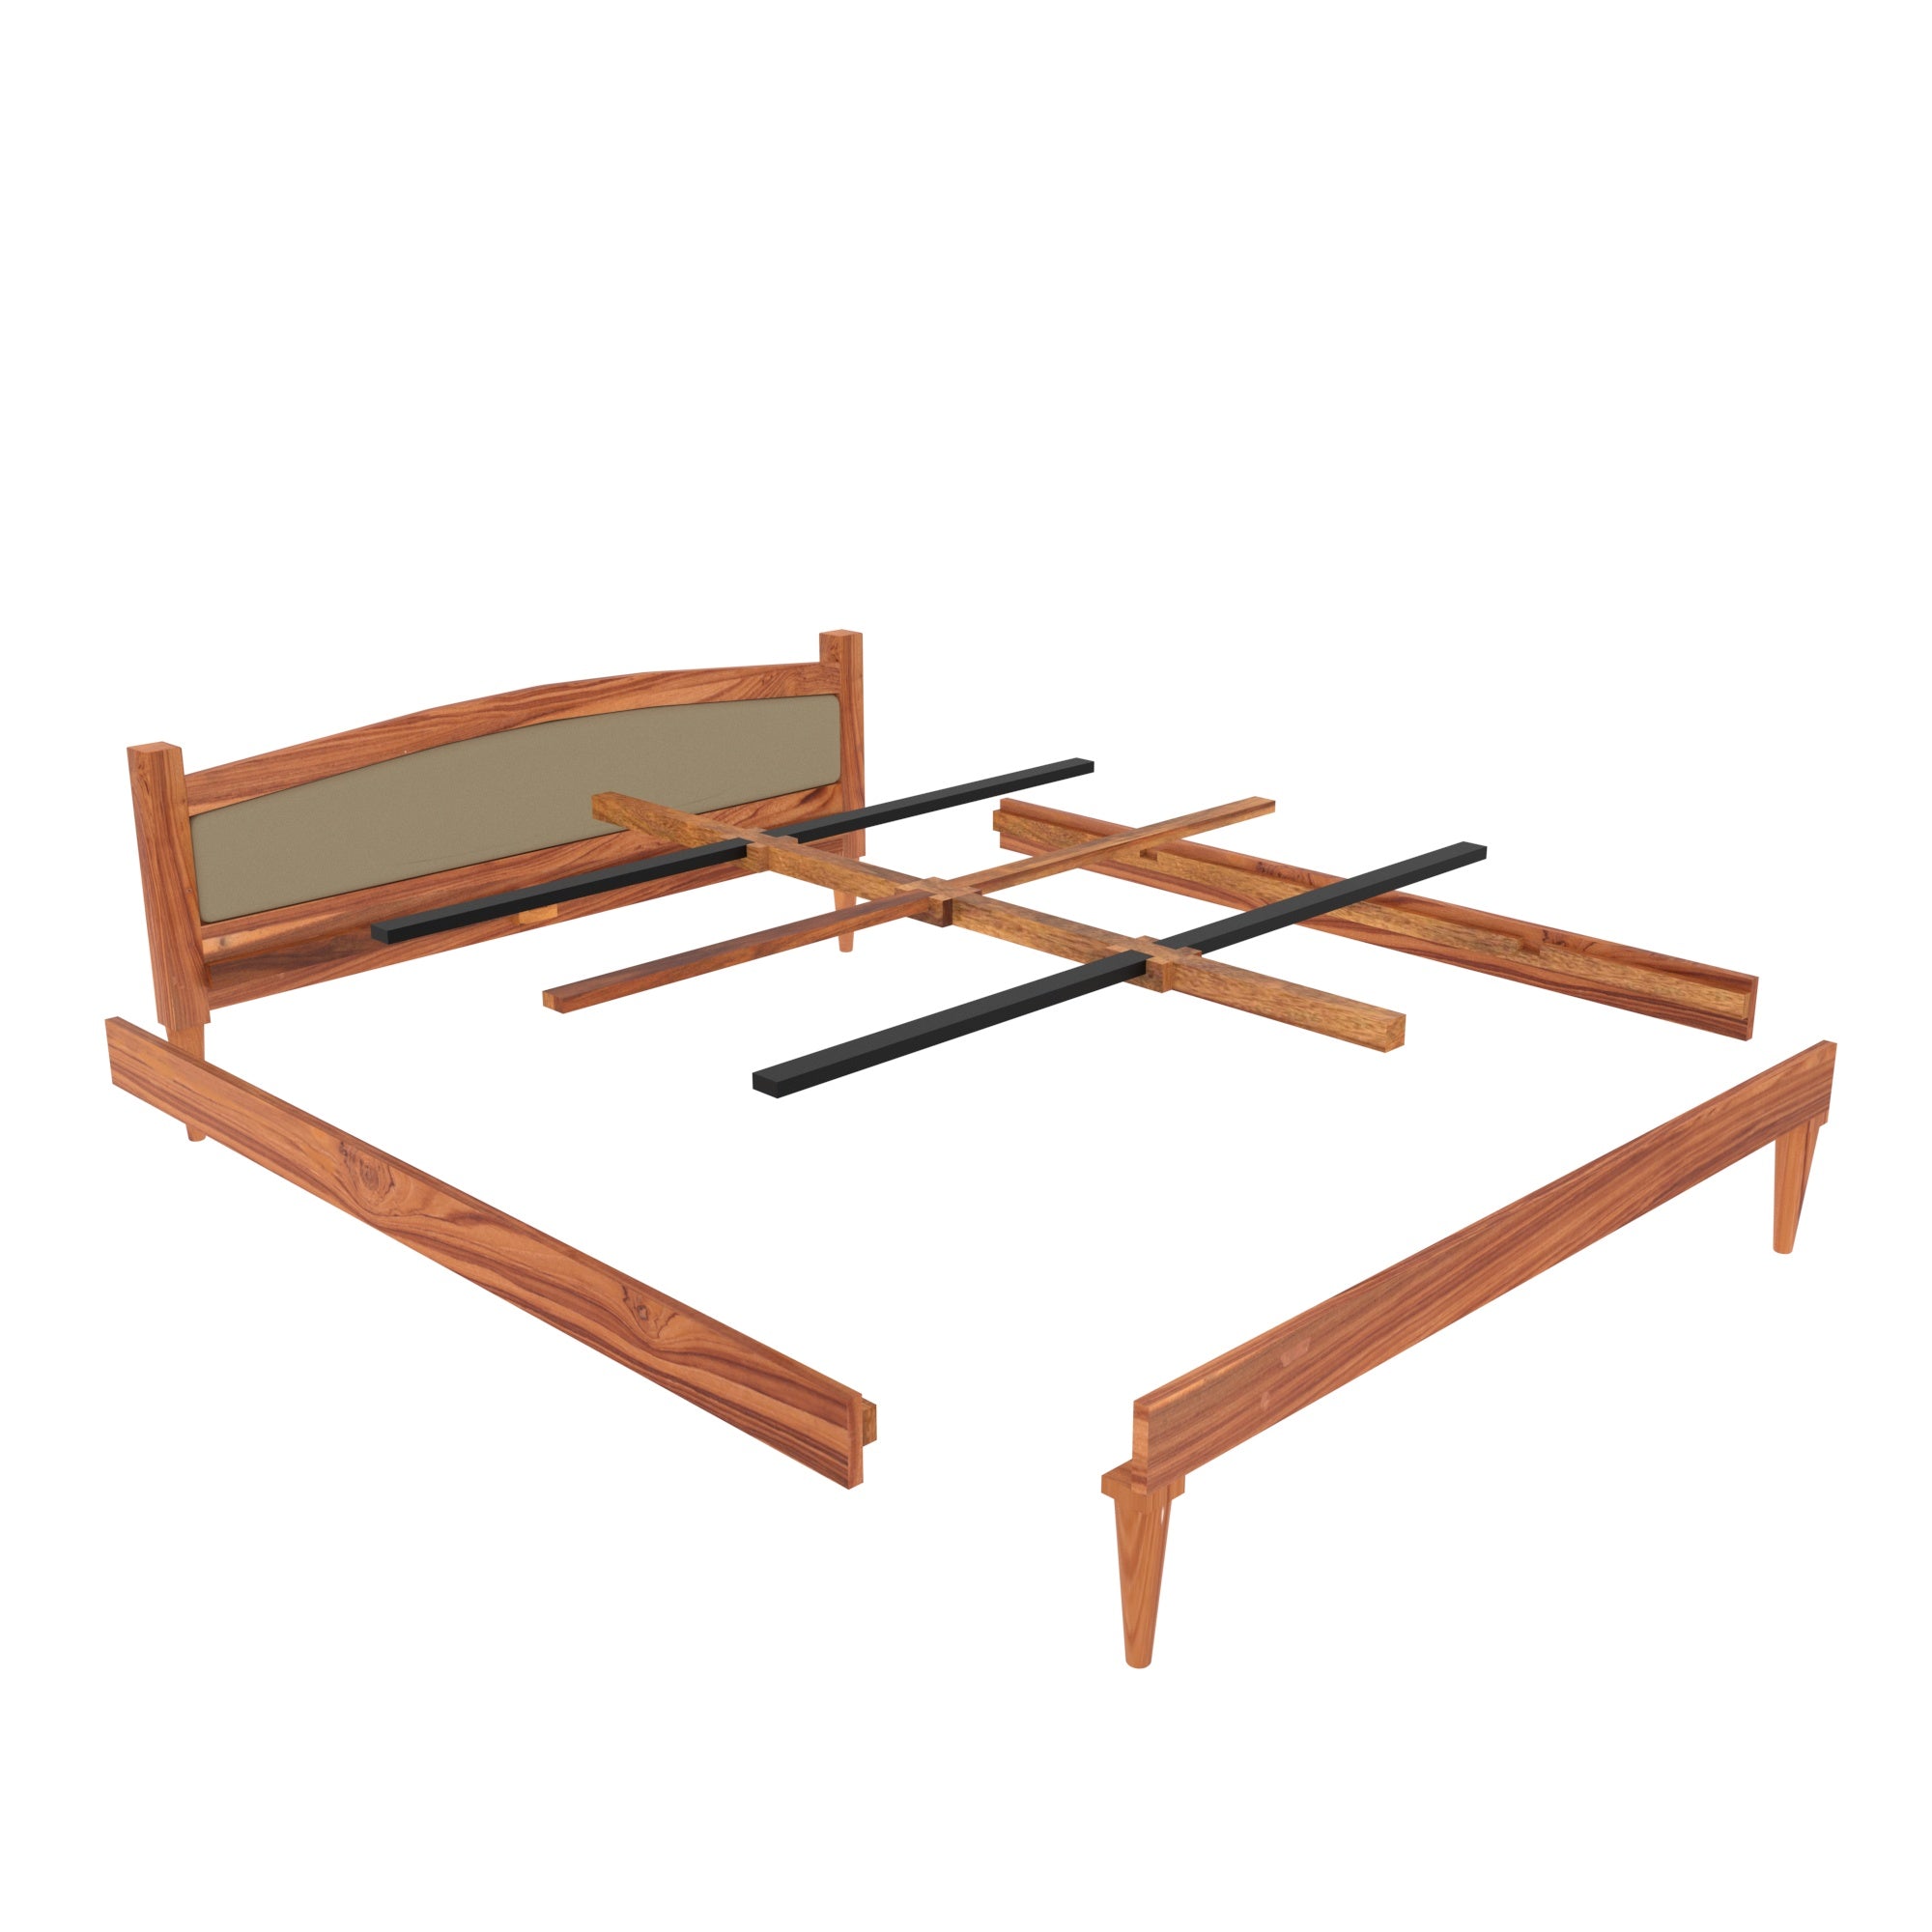 Teak wood Upholstered Bed Bed